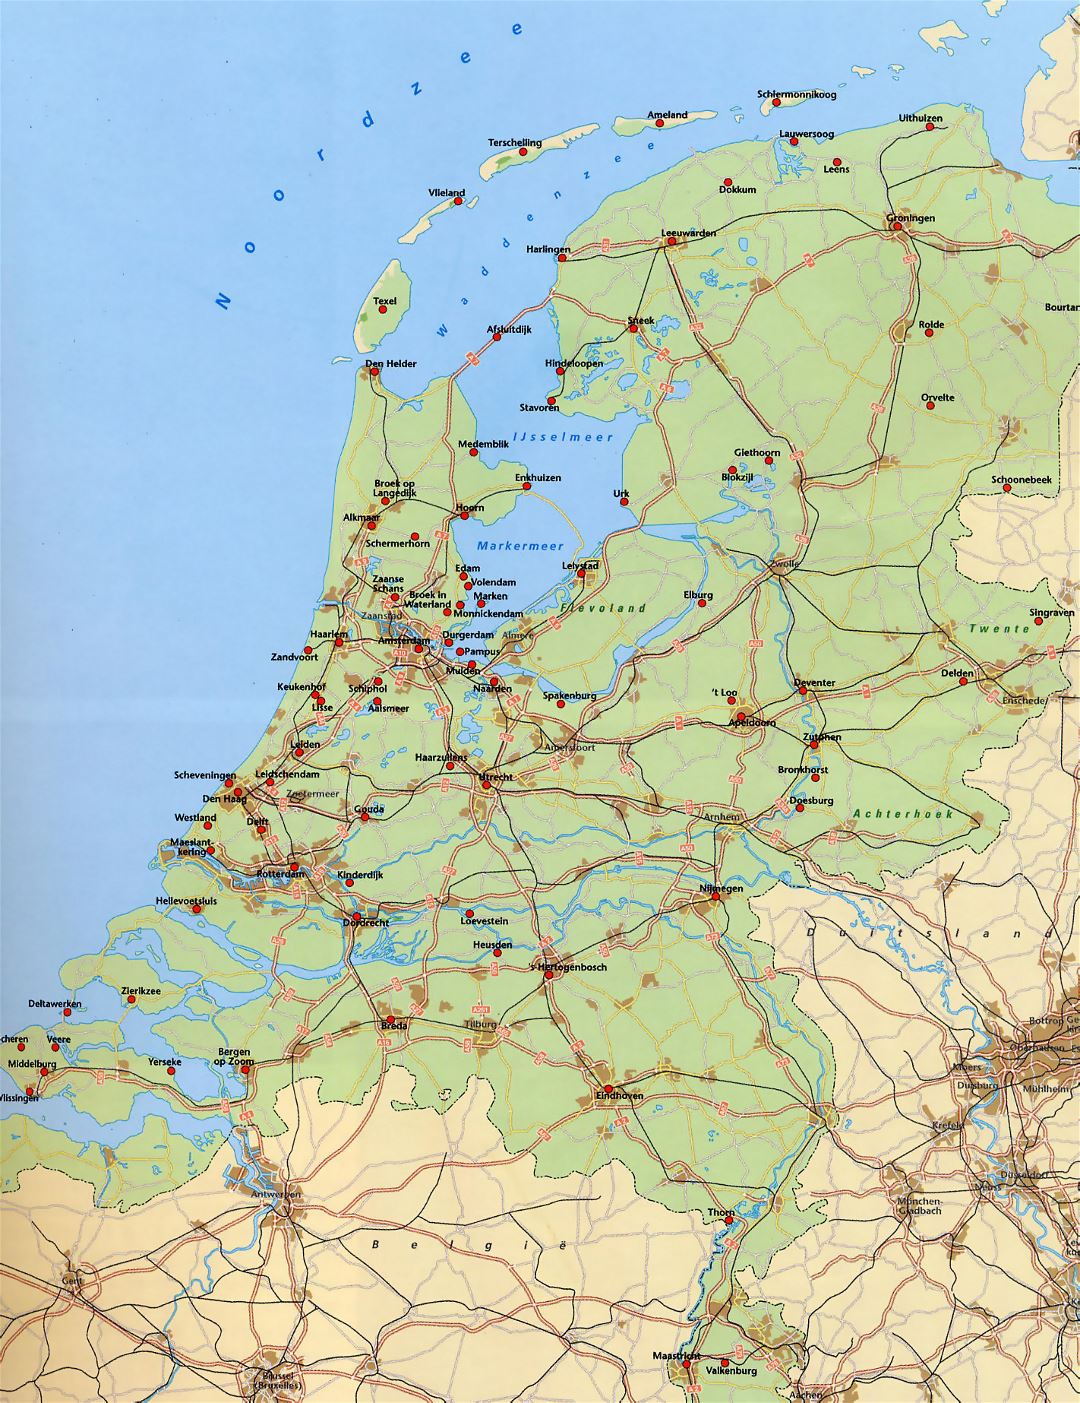 Большая карта Нидерландов с дорогами, железными дорогами и крупными городами